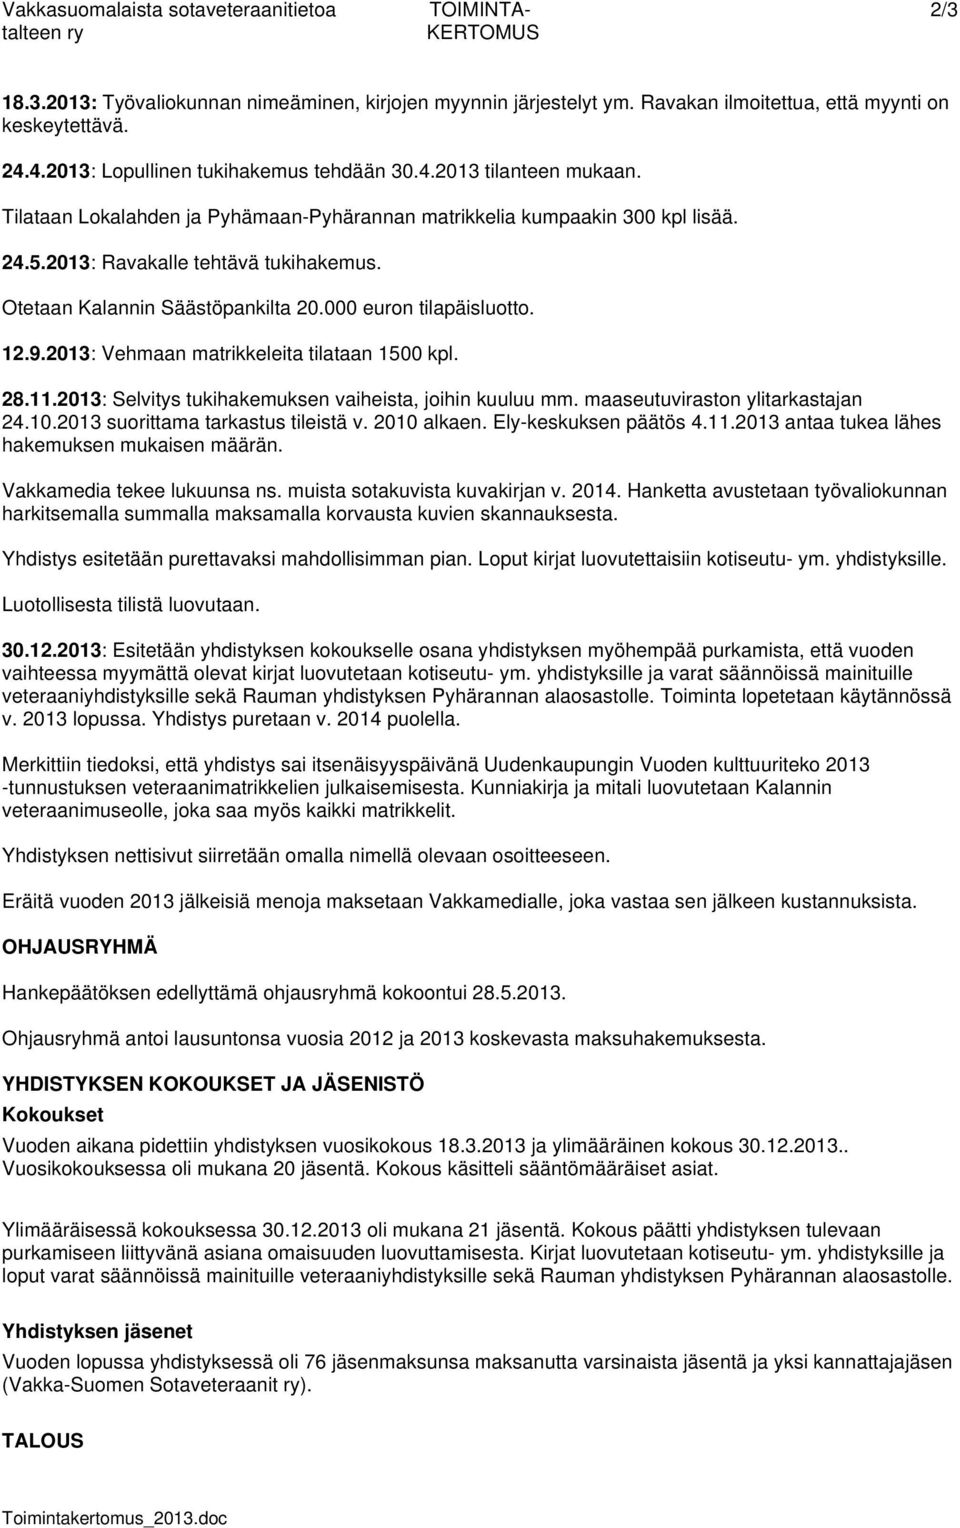 Otetaan Kalannin Säästöpankilta 20.000 euron tilapäisluotto. 12.9.2013: Vehmaan matrikkeleita tilataan 1500 kpl. 28.11.2013: Selvitys tukihakemuksen vaiheista, joihin kuuluu mm.